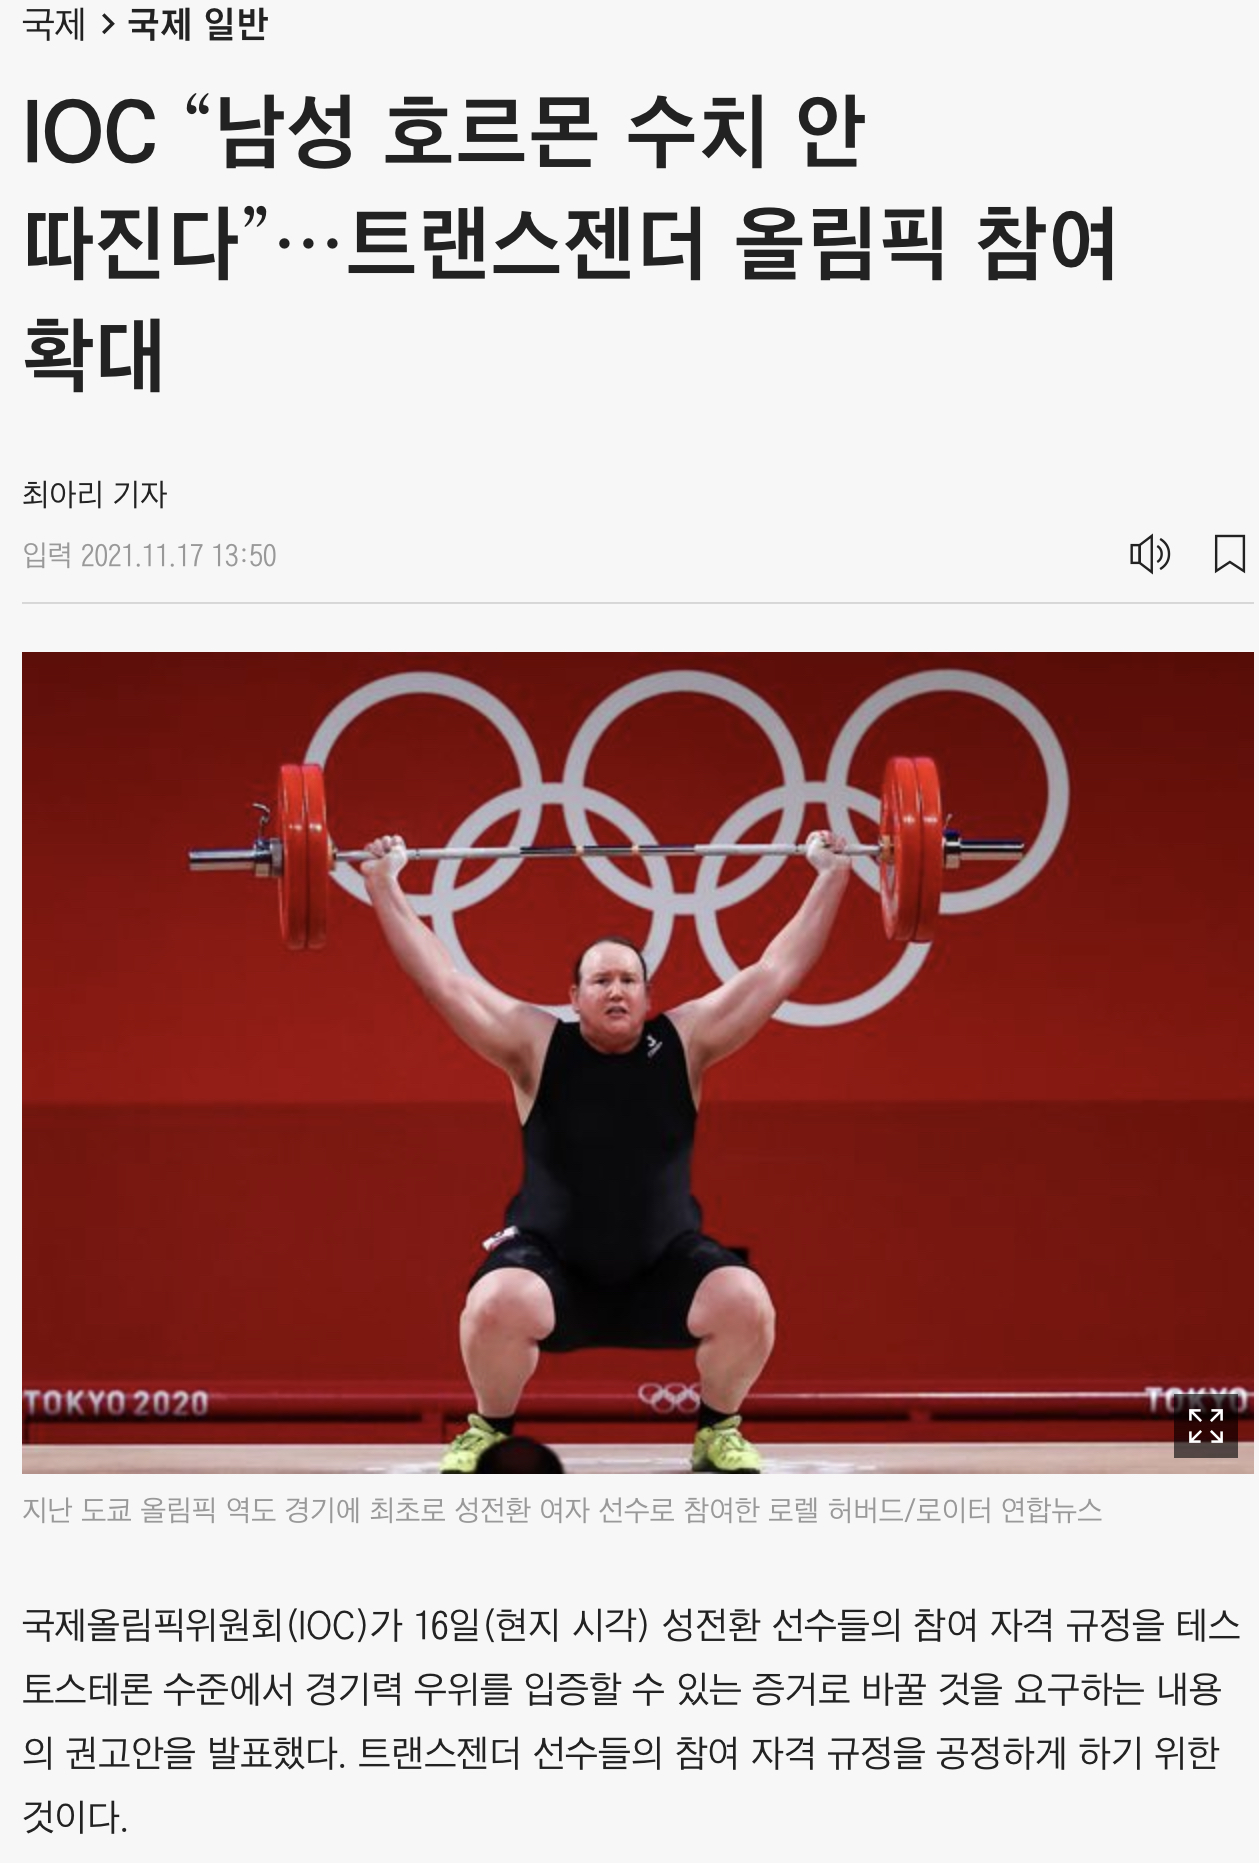 IOC, "남성 호르몬 수치 안따진다" 트랜스젠더 올림픽 참여 확대